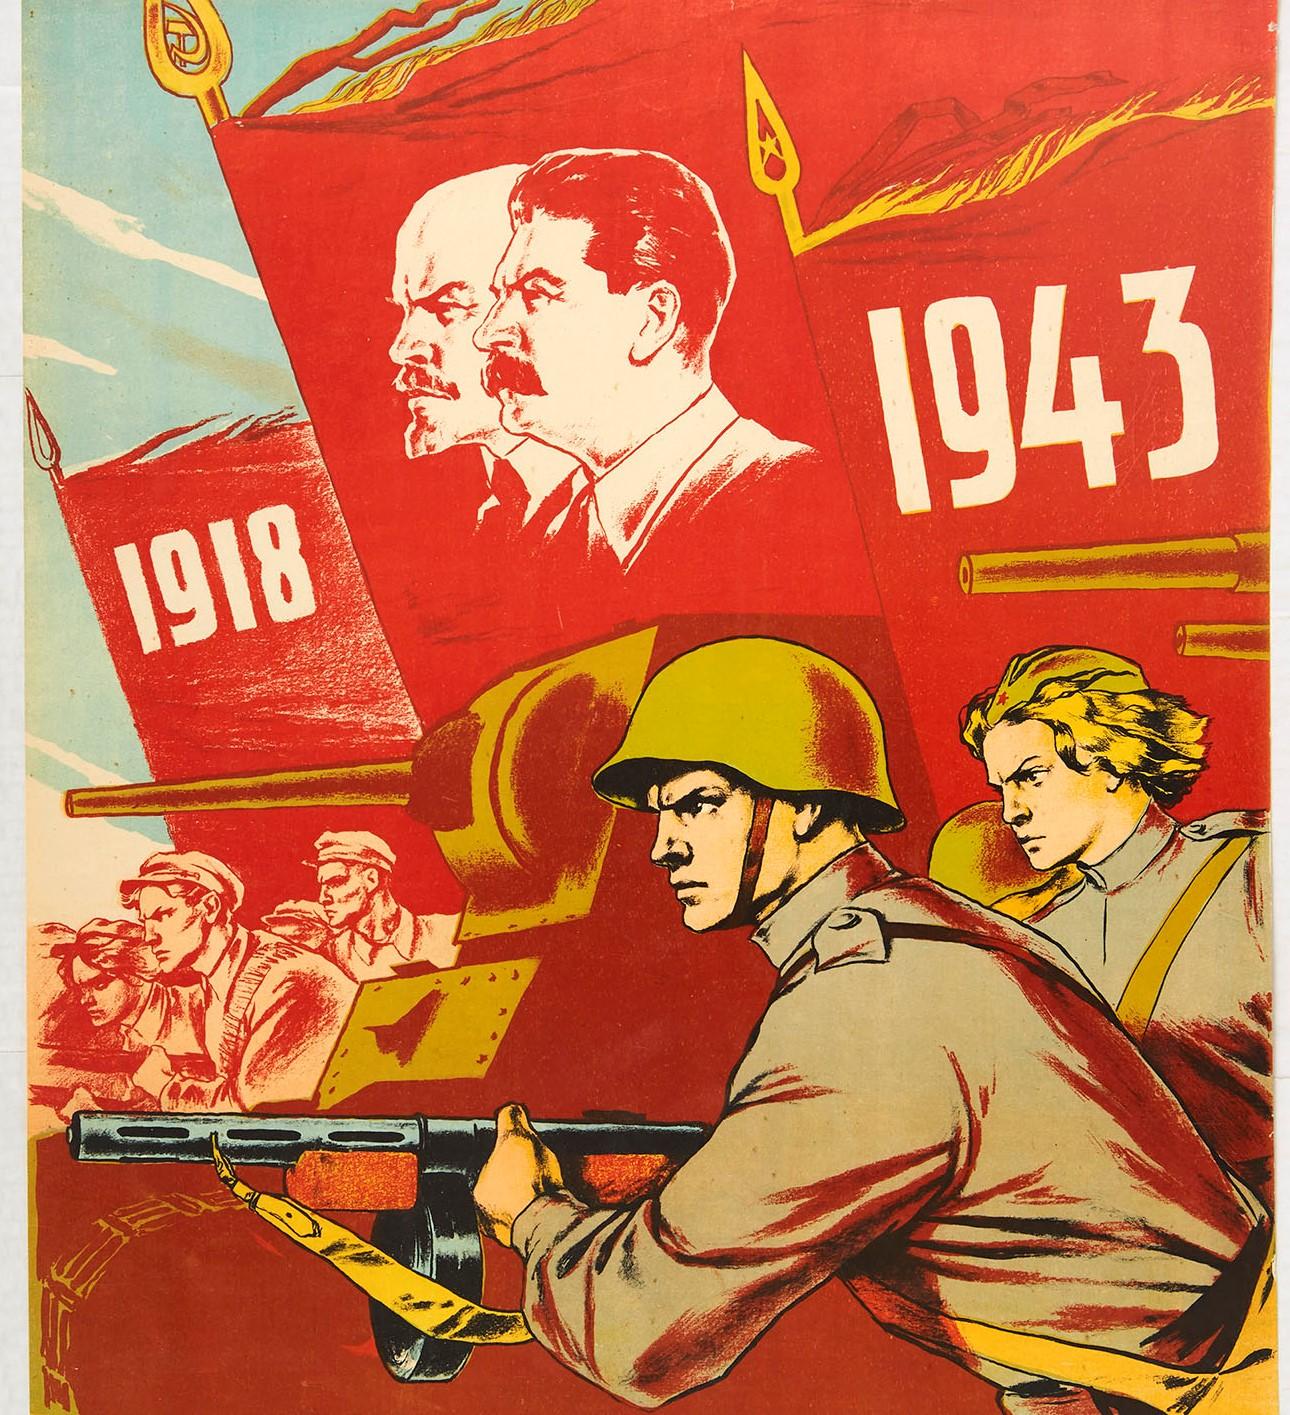 Affiche rétro originale du 25e anniversaire de la propagande soviétique Komsomol en URSS pendant la Seconde Guerre mondiale - Print de V. Serov